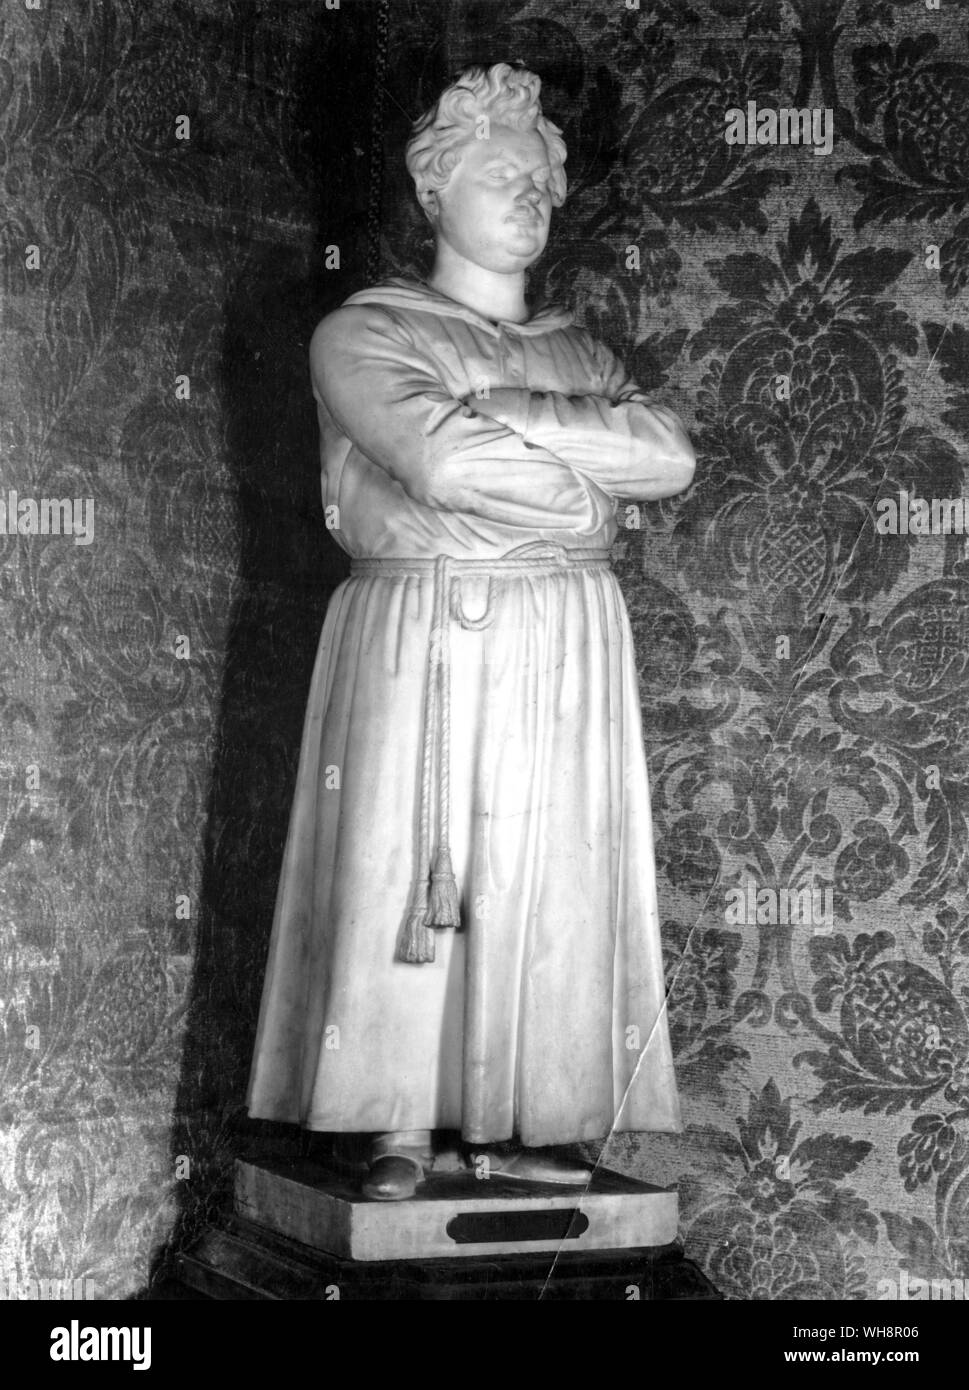 Allessandro Puttinati la estatua de Balzac realizados durante su visita a Milán. Balzac escribió a Madame Hanska: Esta estatua era una labor de cariño... [El artista] quería nada para ella. Con gran dificultad he pagado sus gastos y para el mármol". Foto de stock